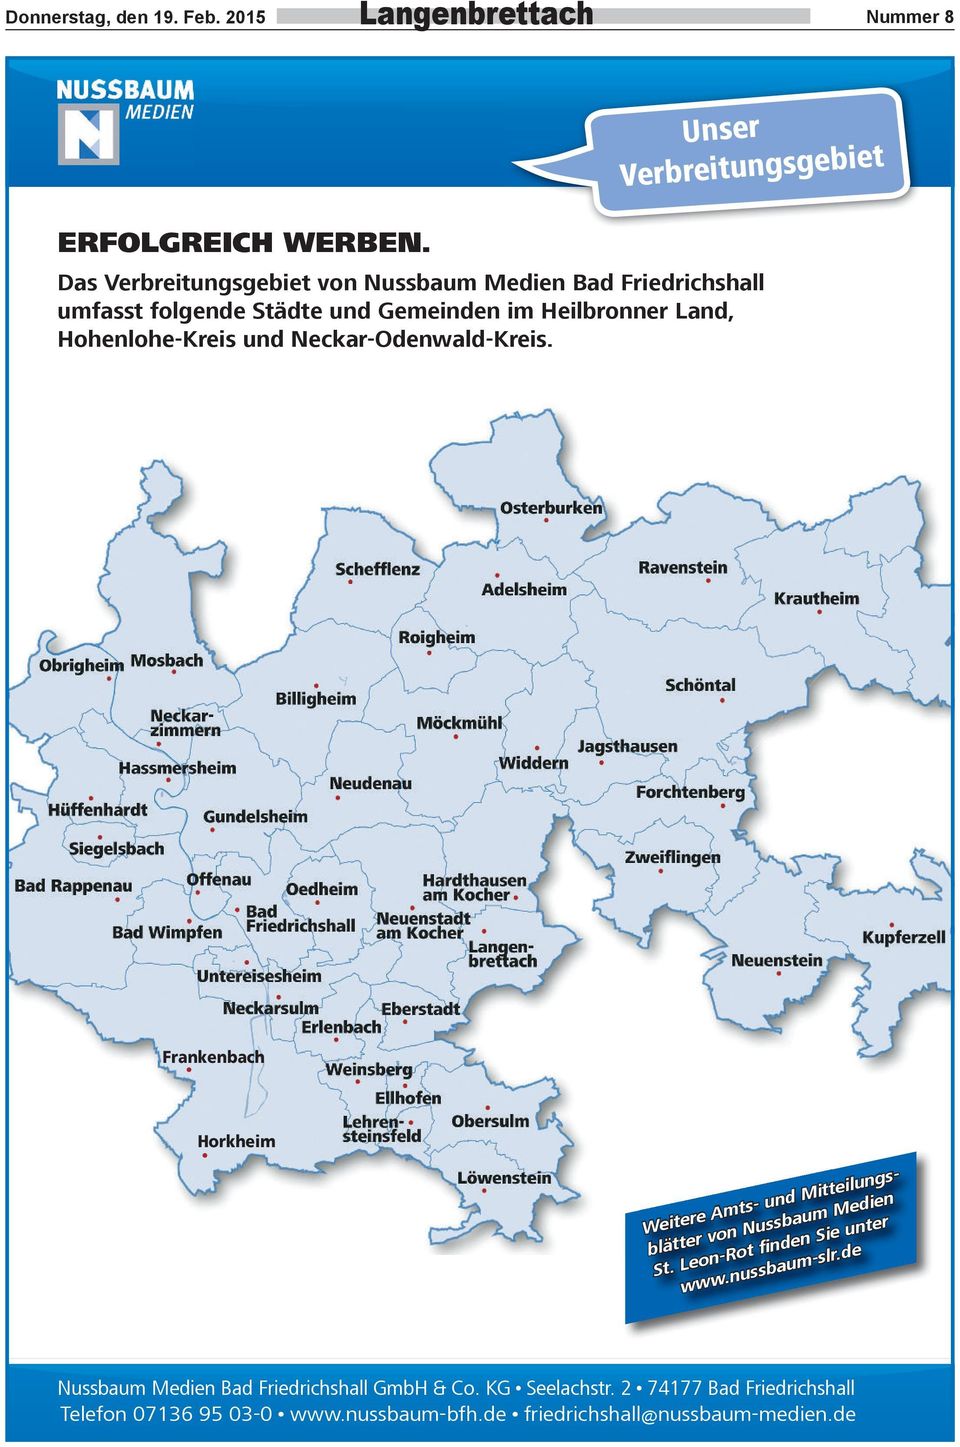 Hohenlohe-Kreis und Neckar-Odenwald-Kreis. Frankenbach Horkheim Weitere Amts- und Mitteilungsblätter von Nussbaum Medien St.